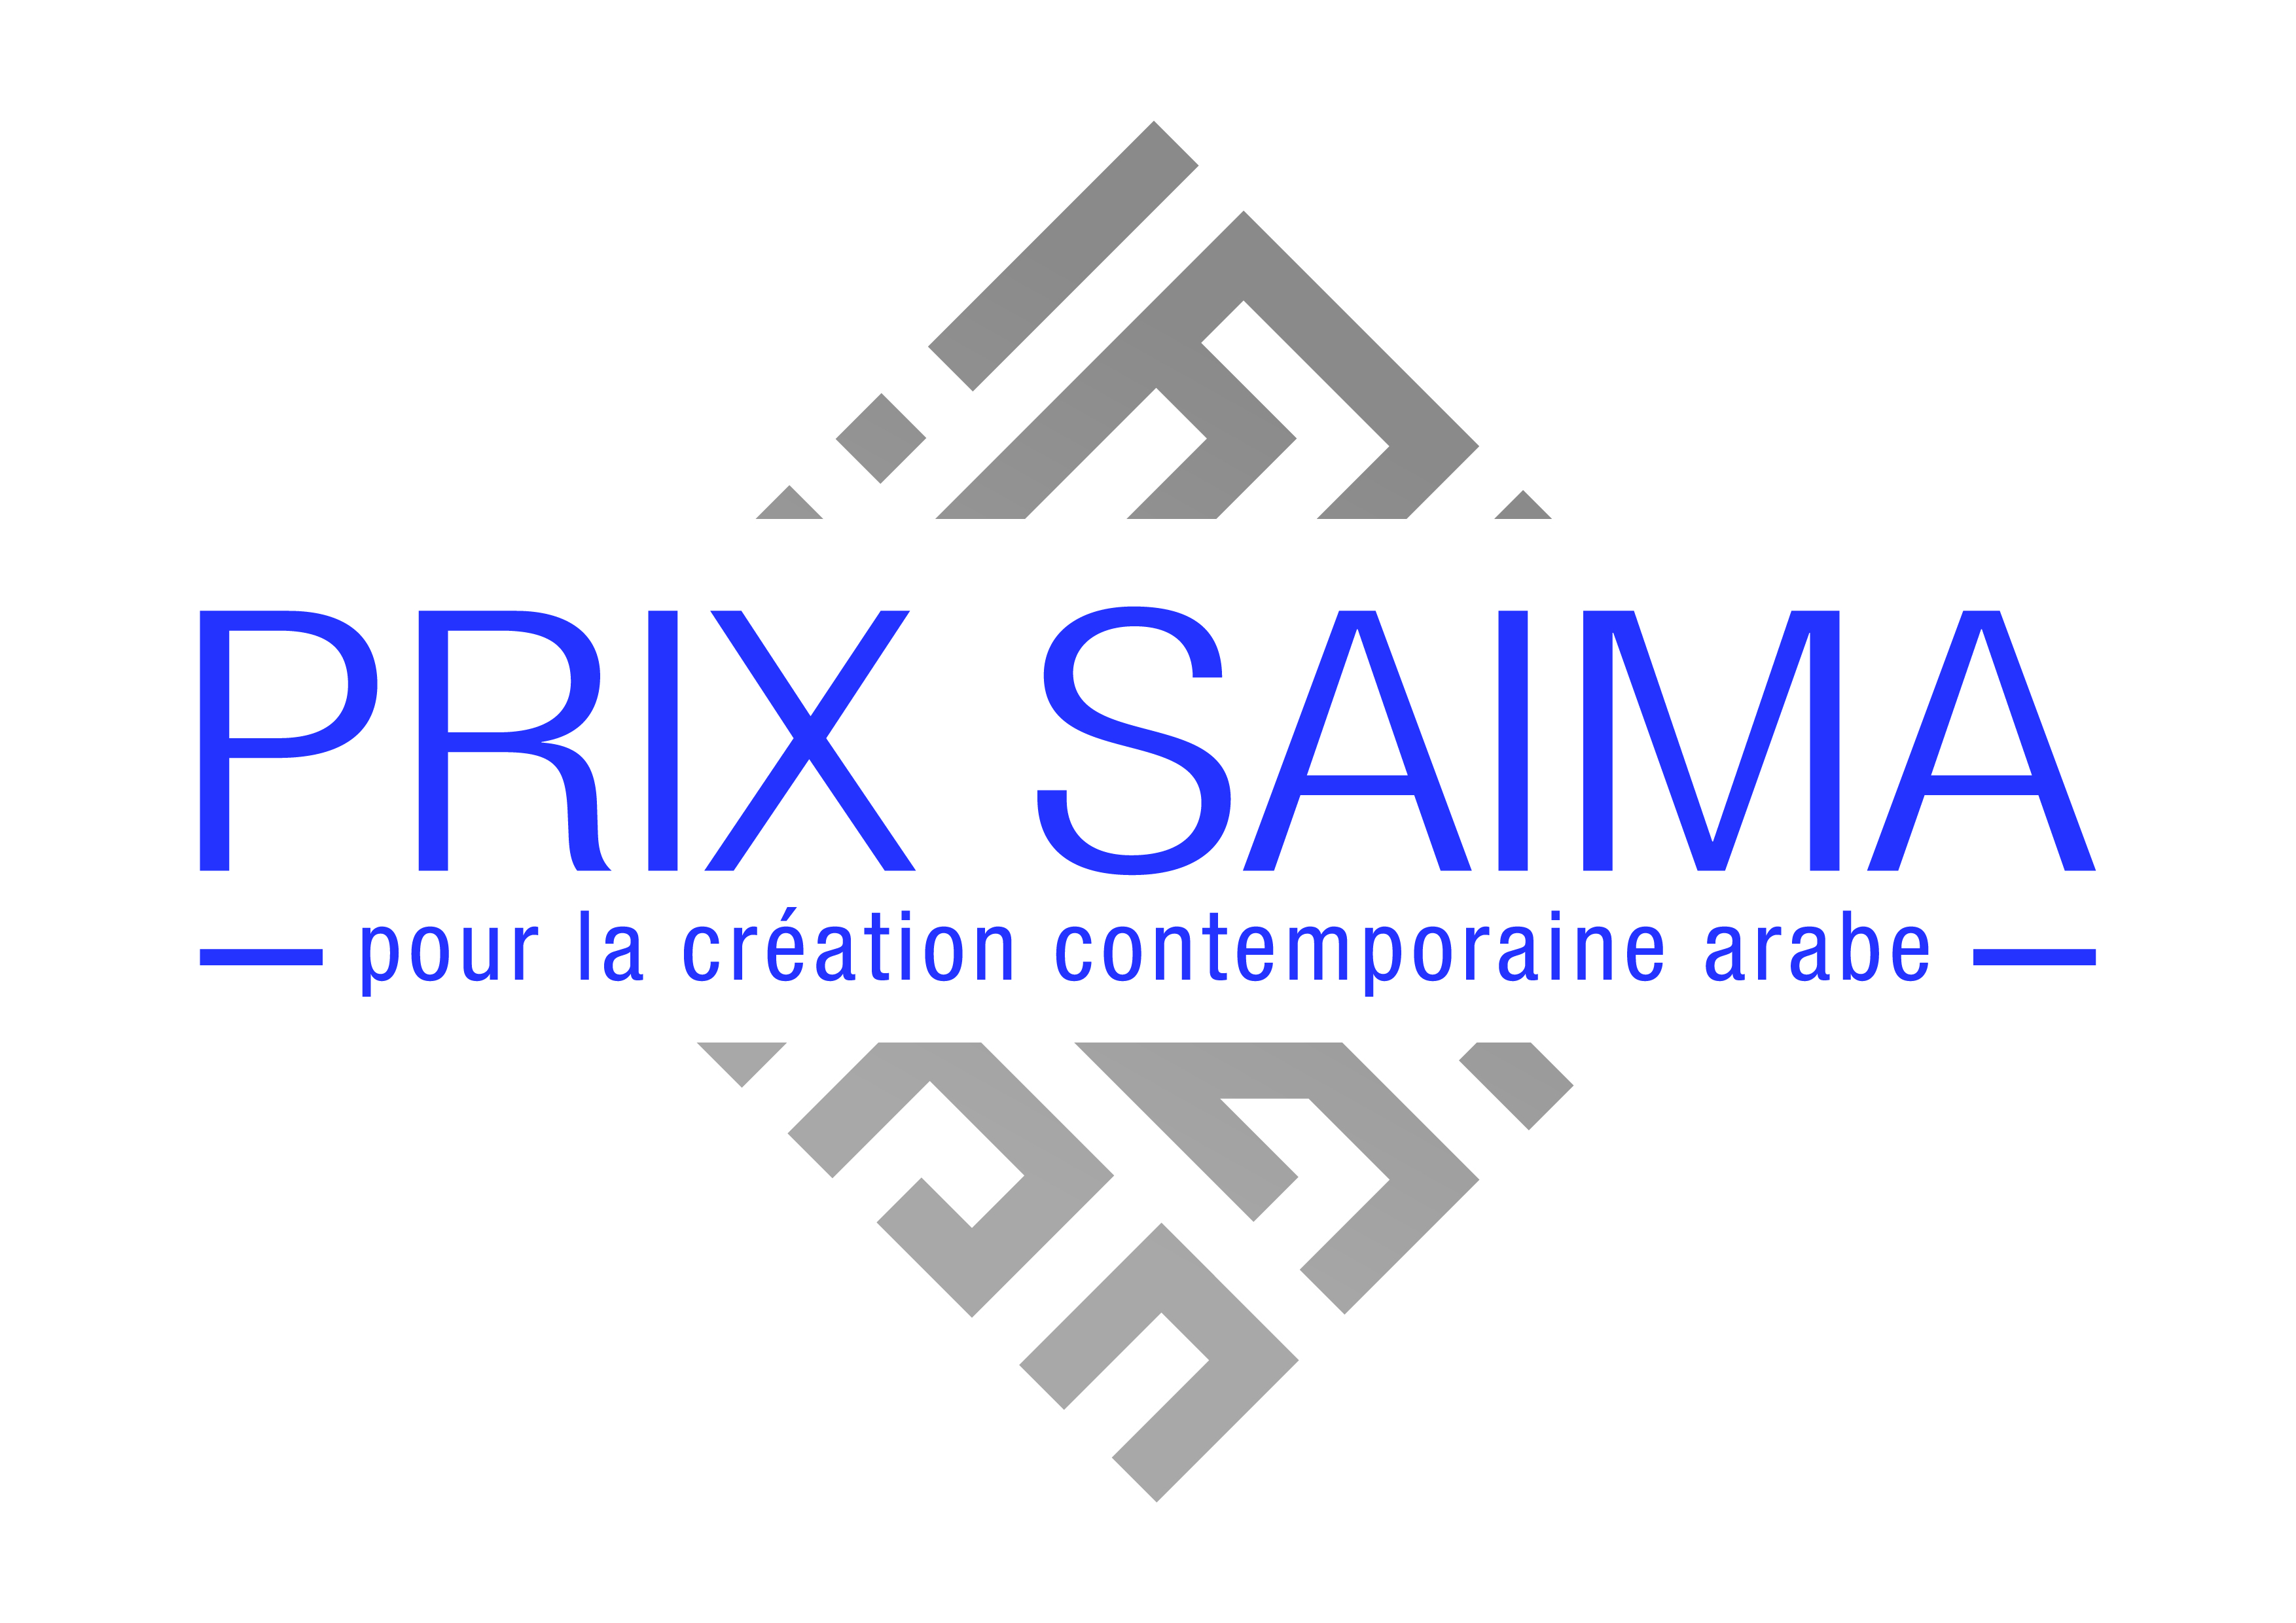 L’Institut du monde arabe lance un prix pour la création contemporaine arabe